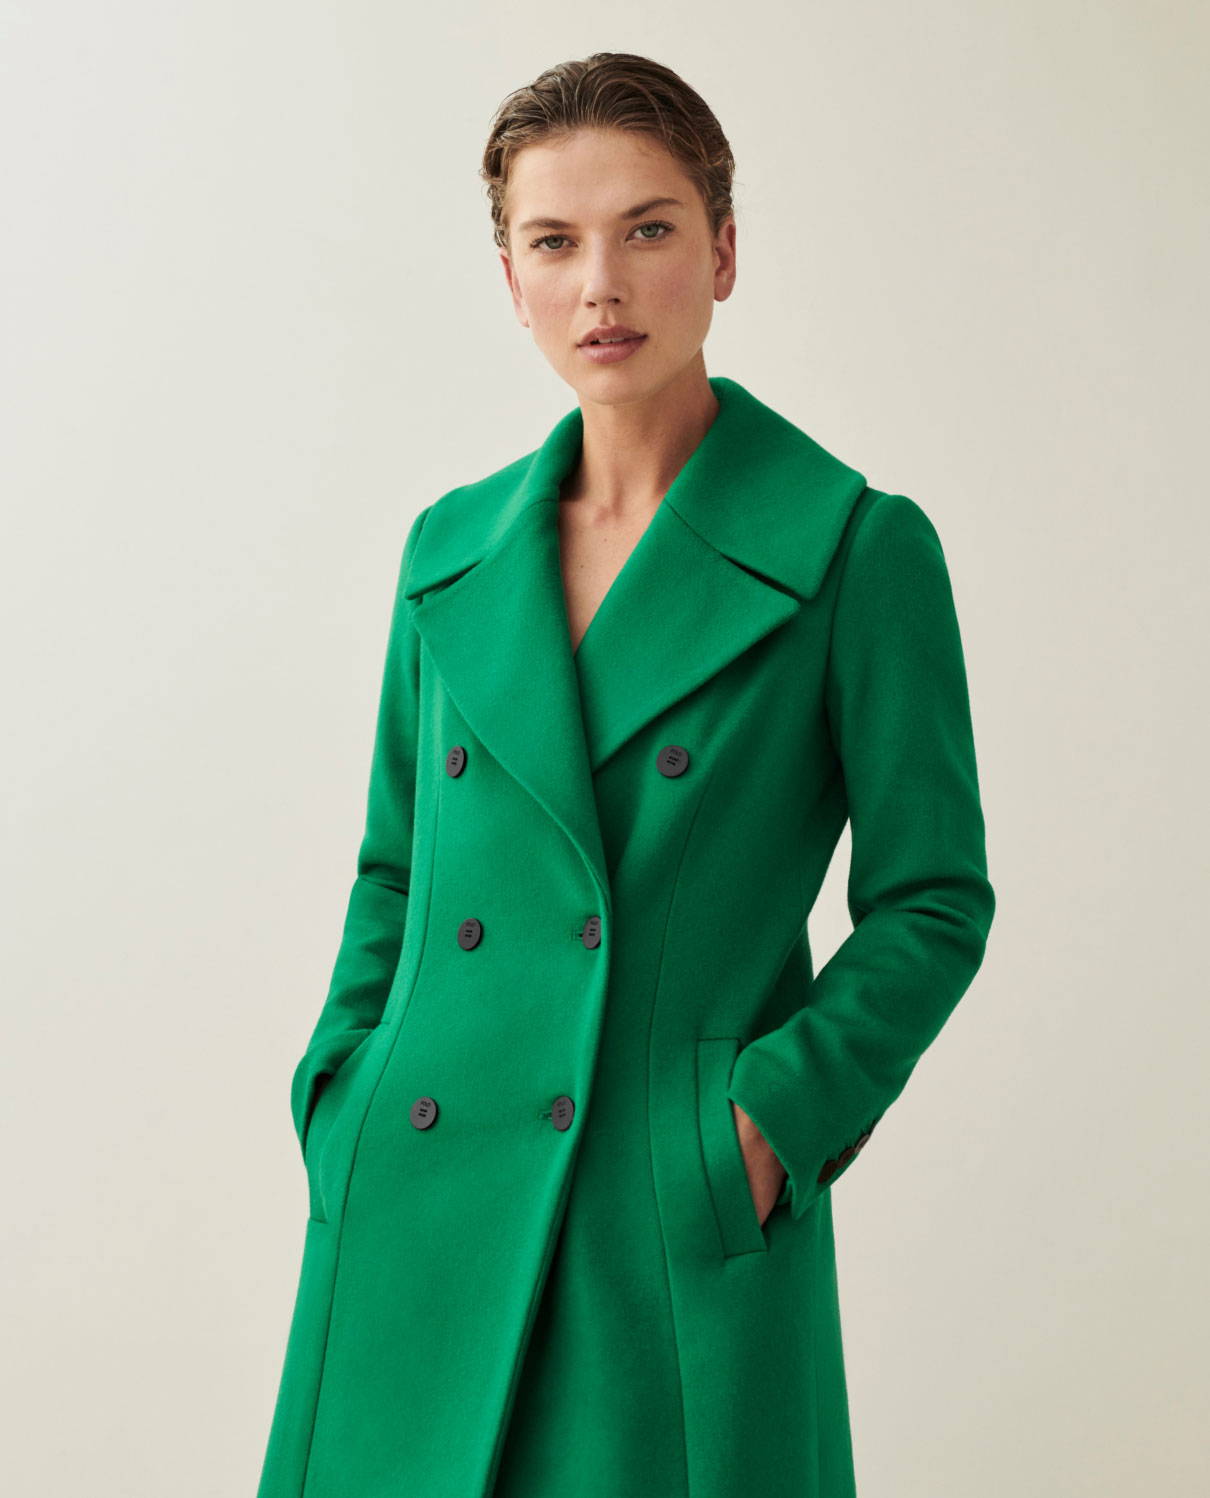 Model wears emerald wool cashmere blend Knightley coat